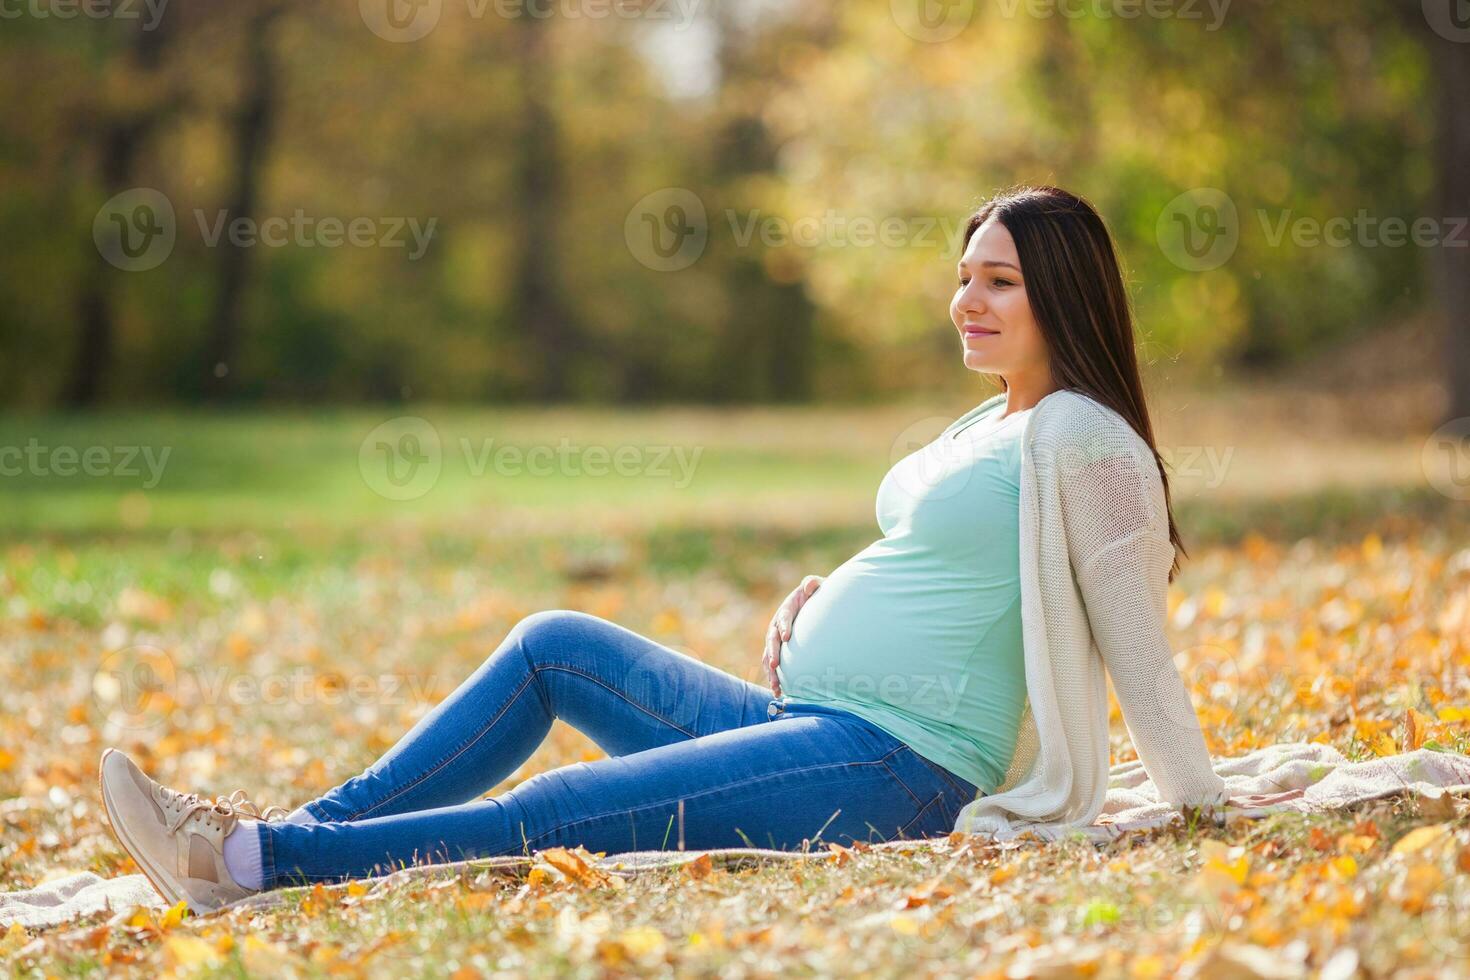 een zwanger vrouw uitgeven tijd buitenshuis foto